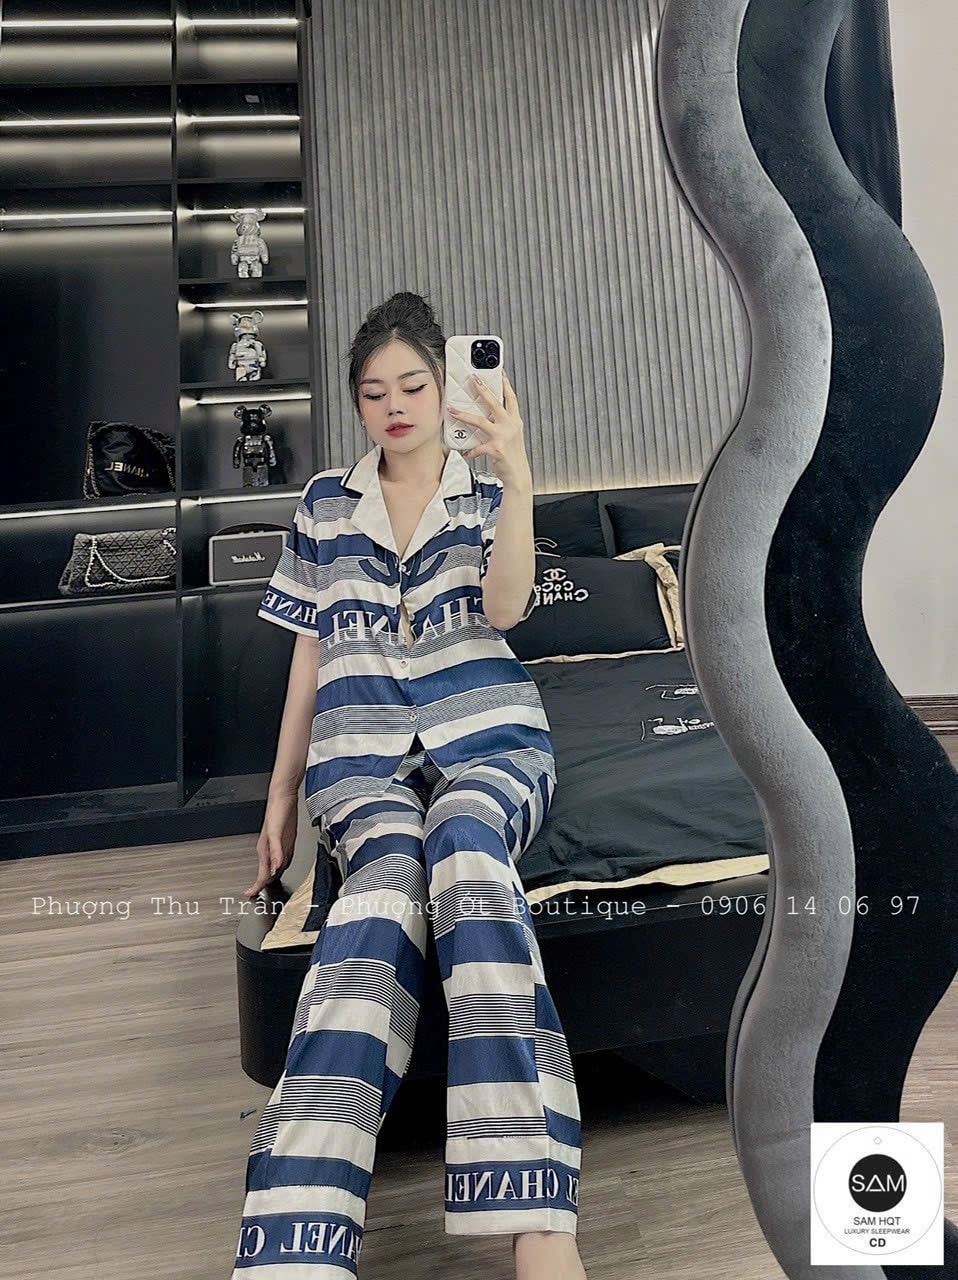 Bộ Pijama Mặc Ở Nhà SAM chất lụa xước mềm mịn, mát, ít nhăn. Mặc ở nhà hoặc đi dạo đều xinh. Free size 60kg